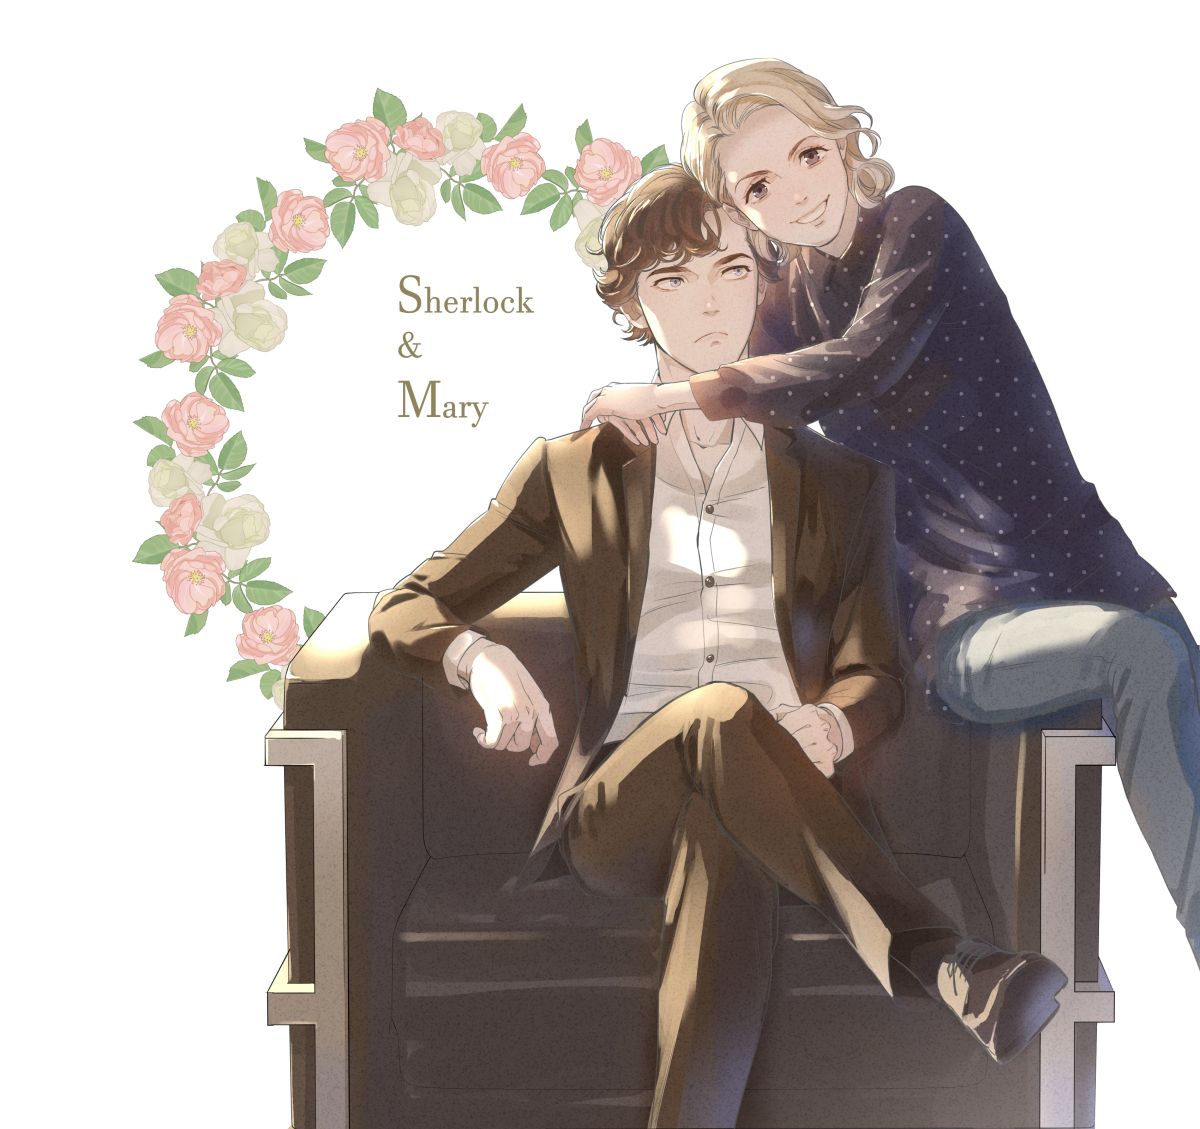 「シャーロックとメアリーの姉弟感が大好き#Sherlock 」|sayaのイラスト